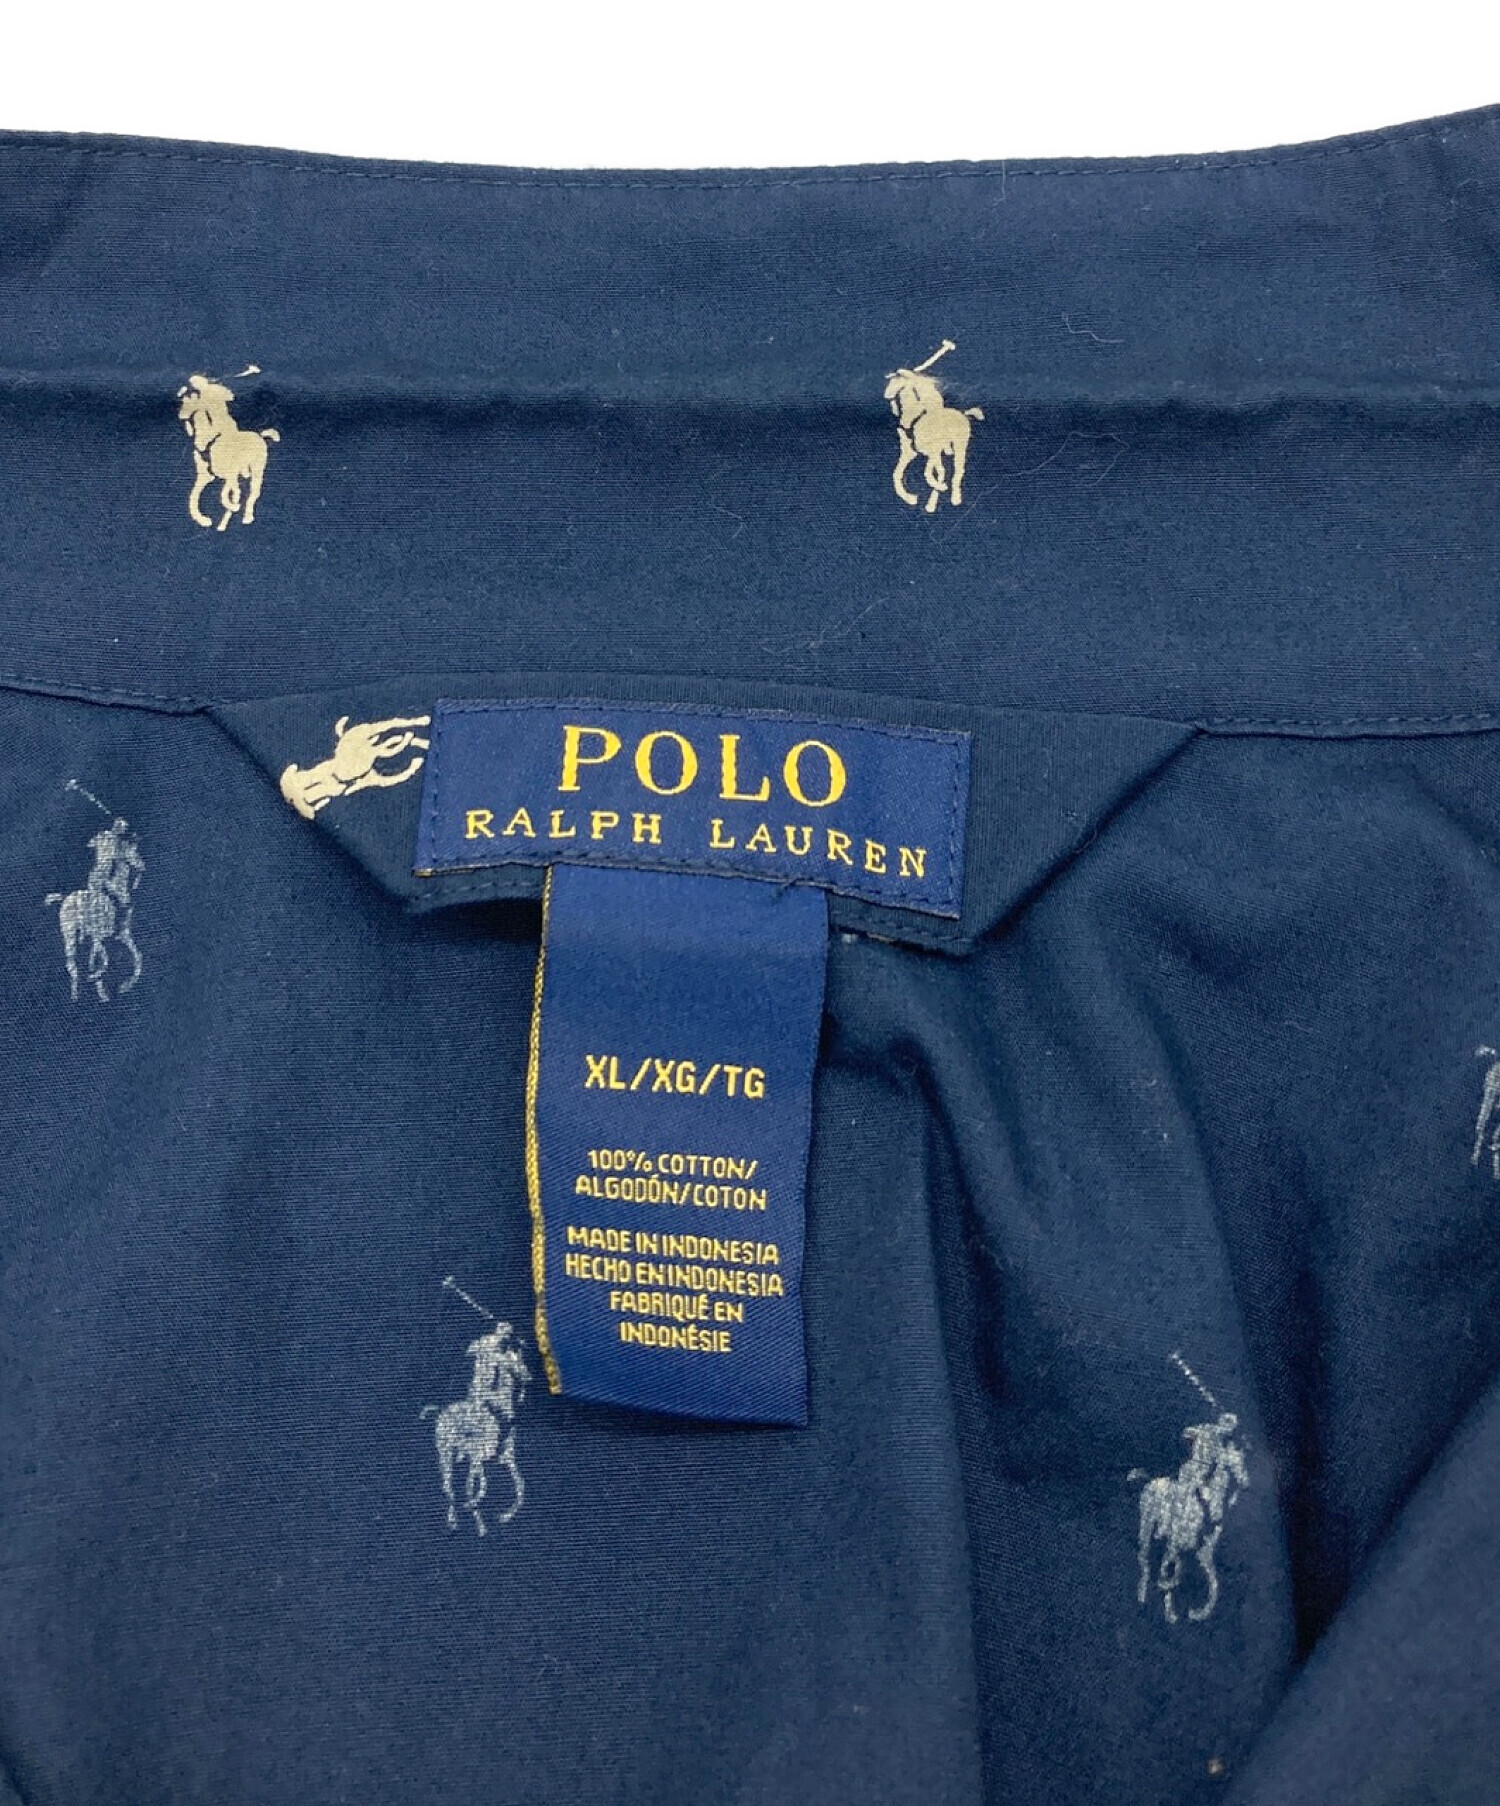 POLO RALPH LAUREN (ポロ・ラルフローレン) ポニー総柄パジャマシャツ ネイビー サイズ:XL